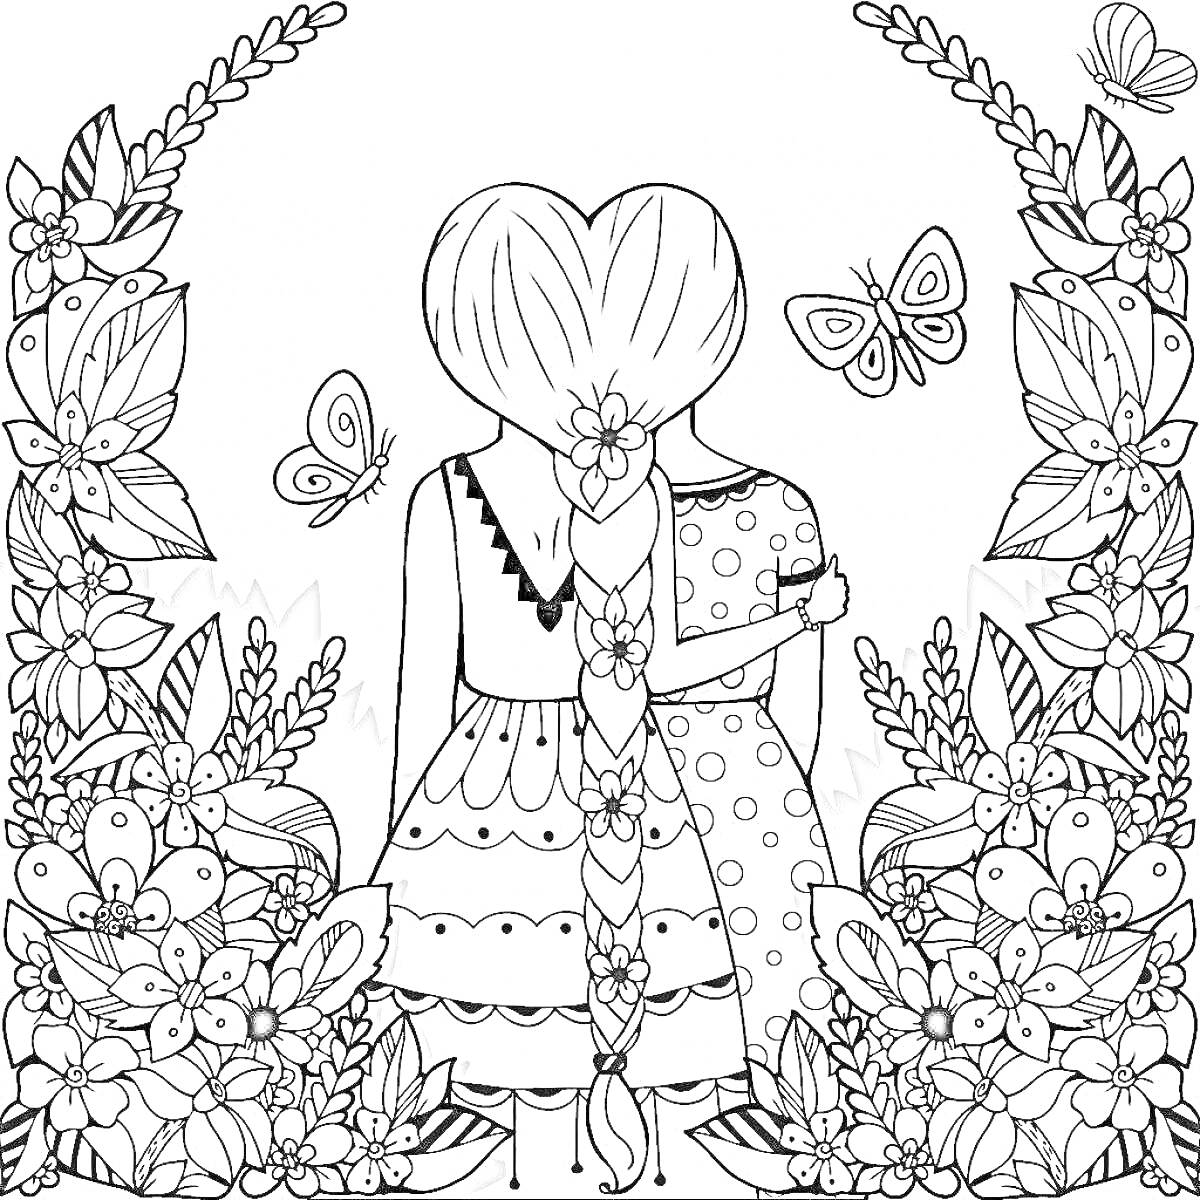 Раскраска Девочки со сплетенными сердцем волосами, цветы, бабочки, листья